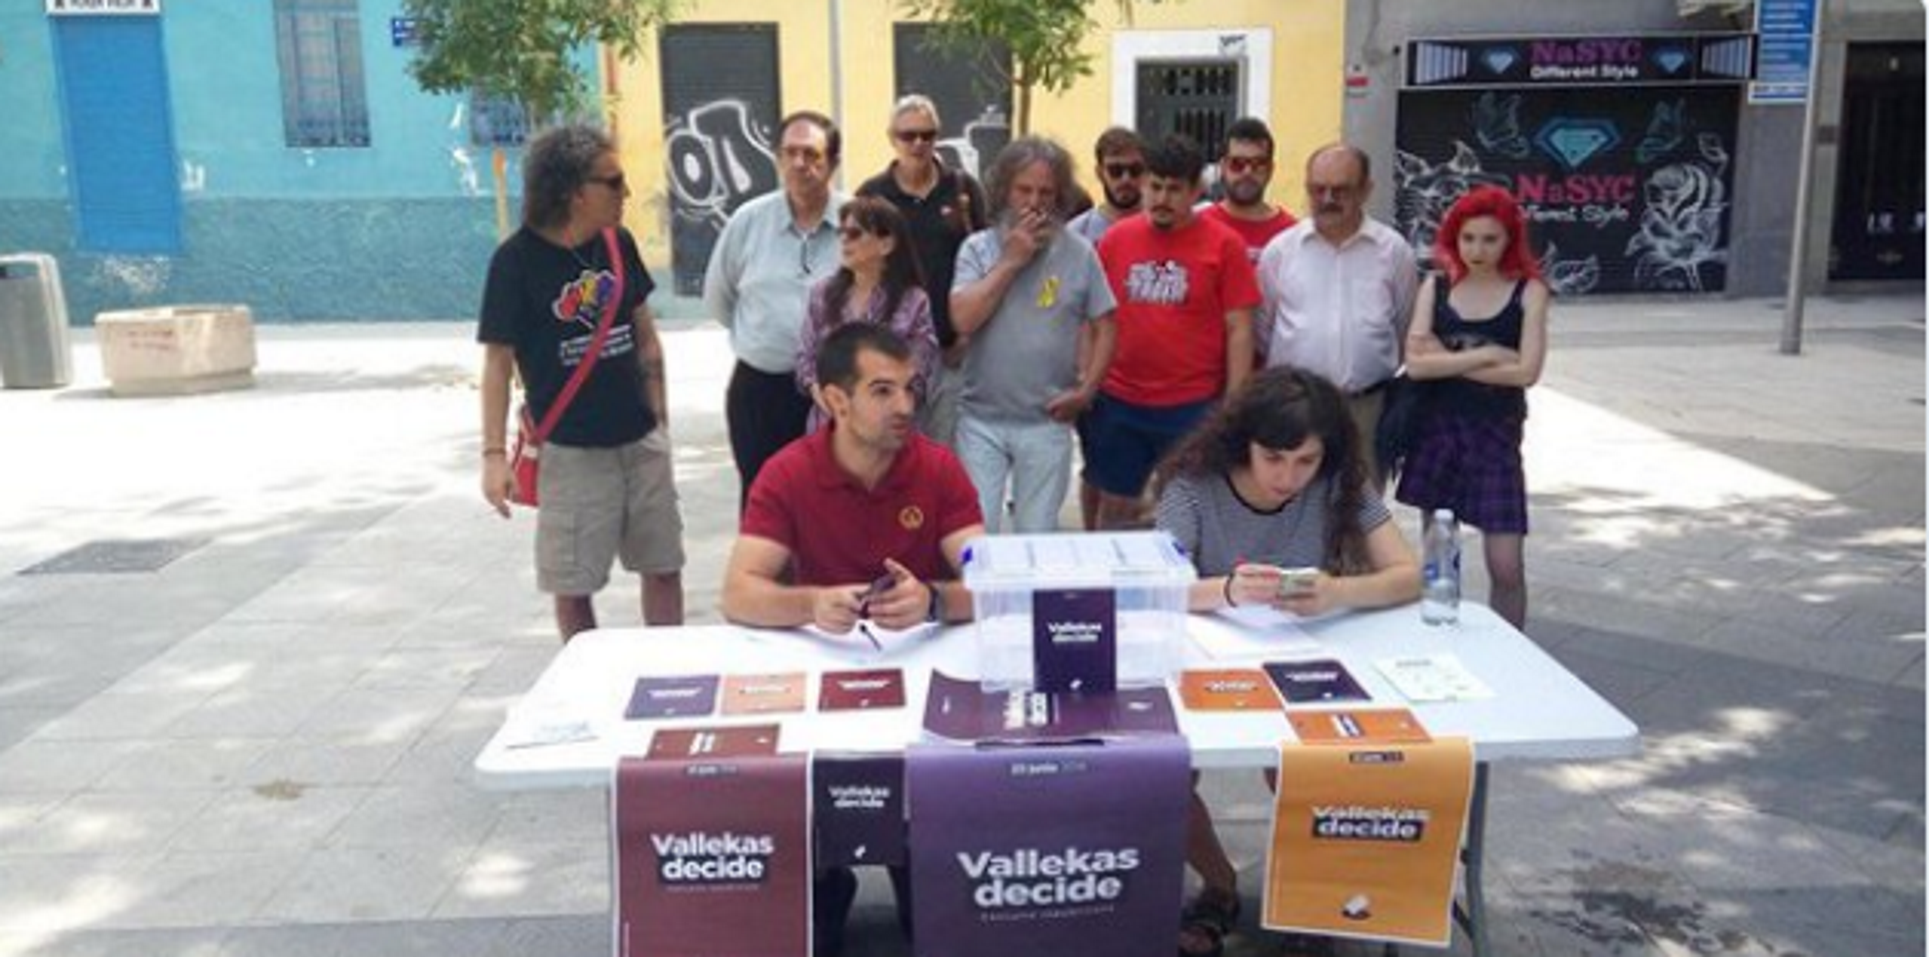 Vallecas organitza una consulta sobre la monarquia espanyola, a l'estil català